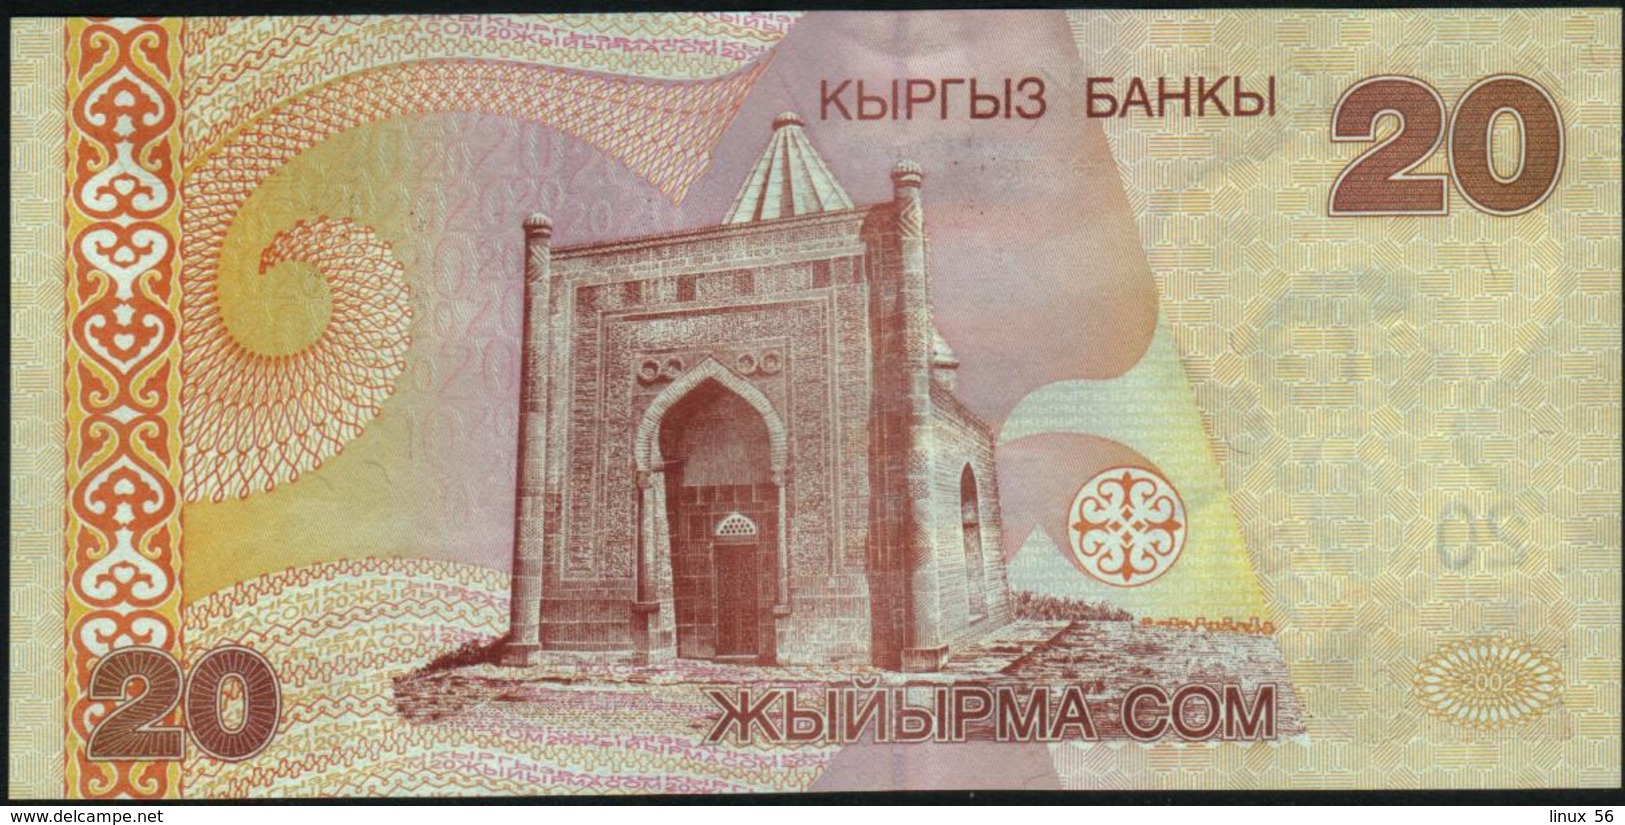 KYRGYZSTAN - 20 Som 2002 {Kyrgyz Banky} UNC P.19 - Kyrgyzstan